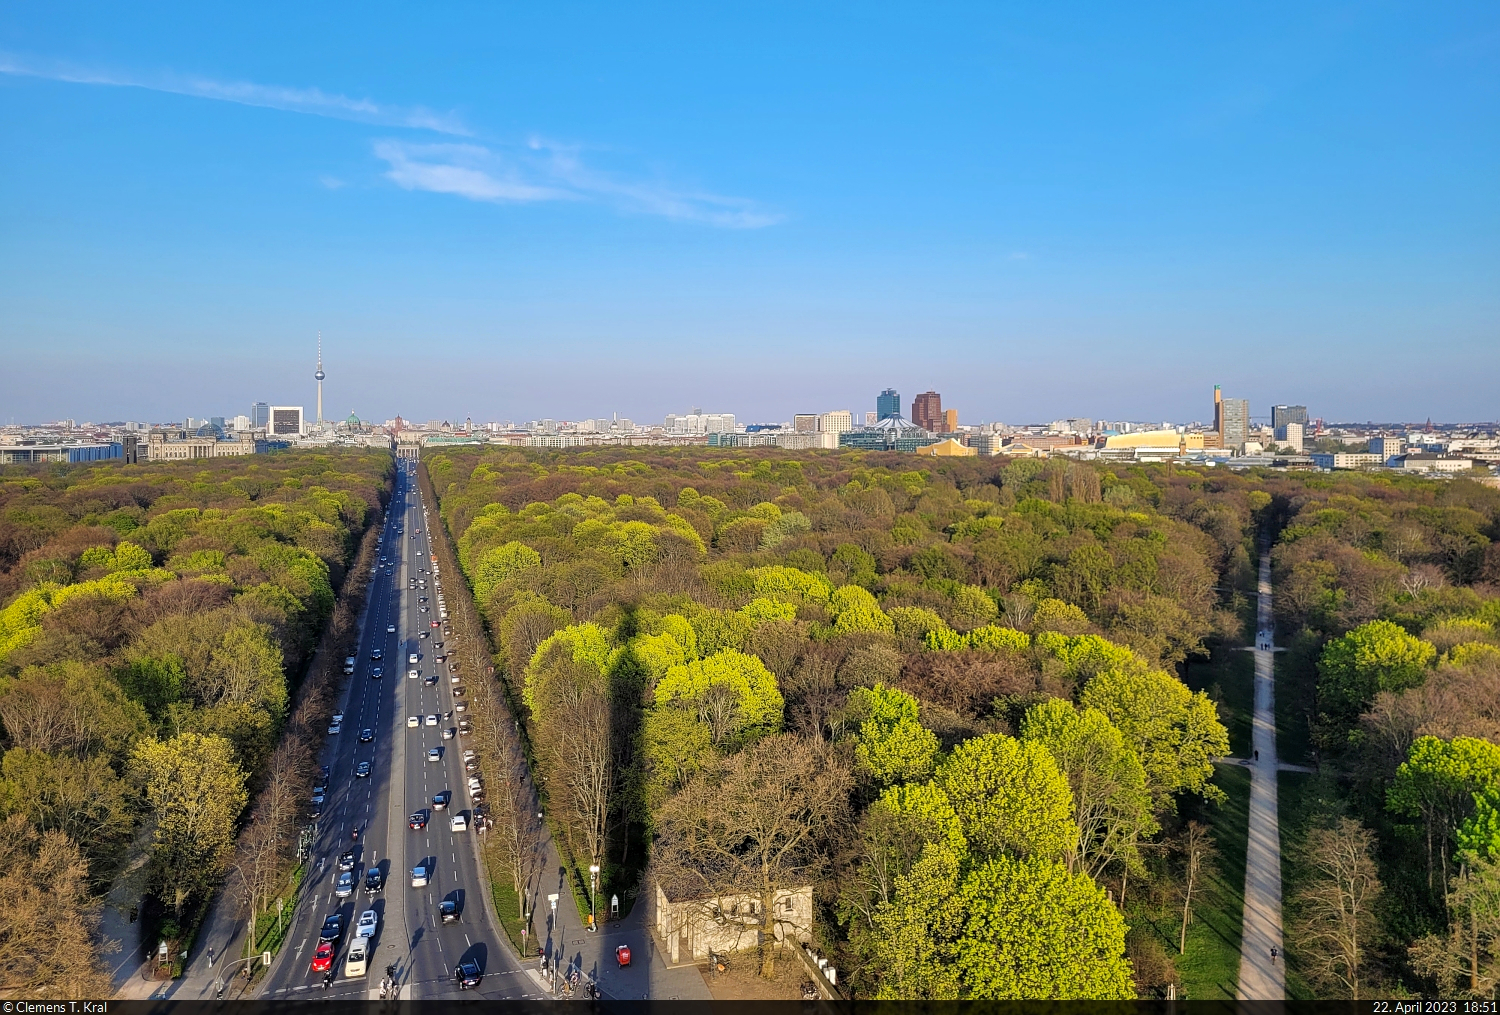 Sdwestliche Ansicht auf Berlin von der Siegessule. Hinter dem Tiergarten u.a. sichtbar sind die Hochhuser am Potsdamer Platz und das Tempodrom, eine Veranstaltungssttte.

🕓 22.4.2023 | 18:51 Uhr